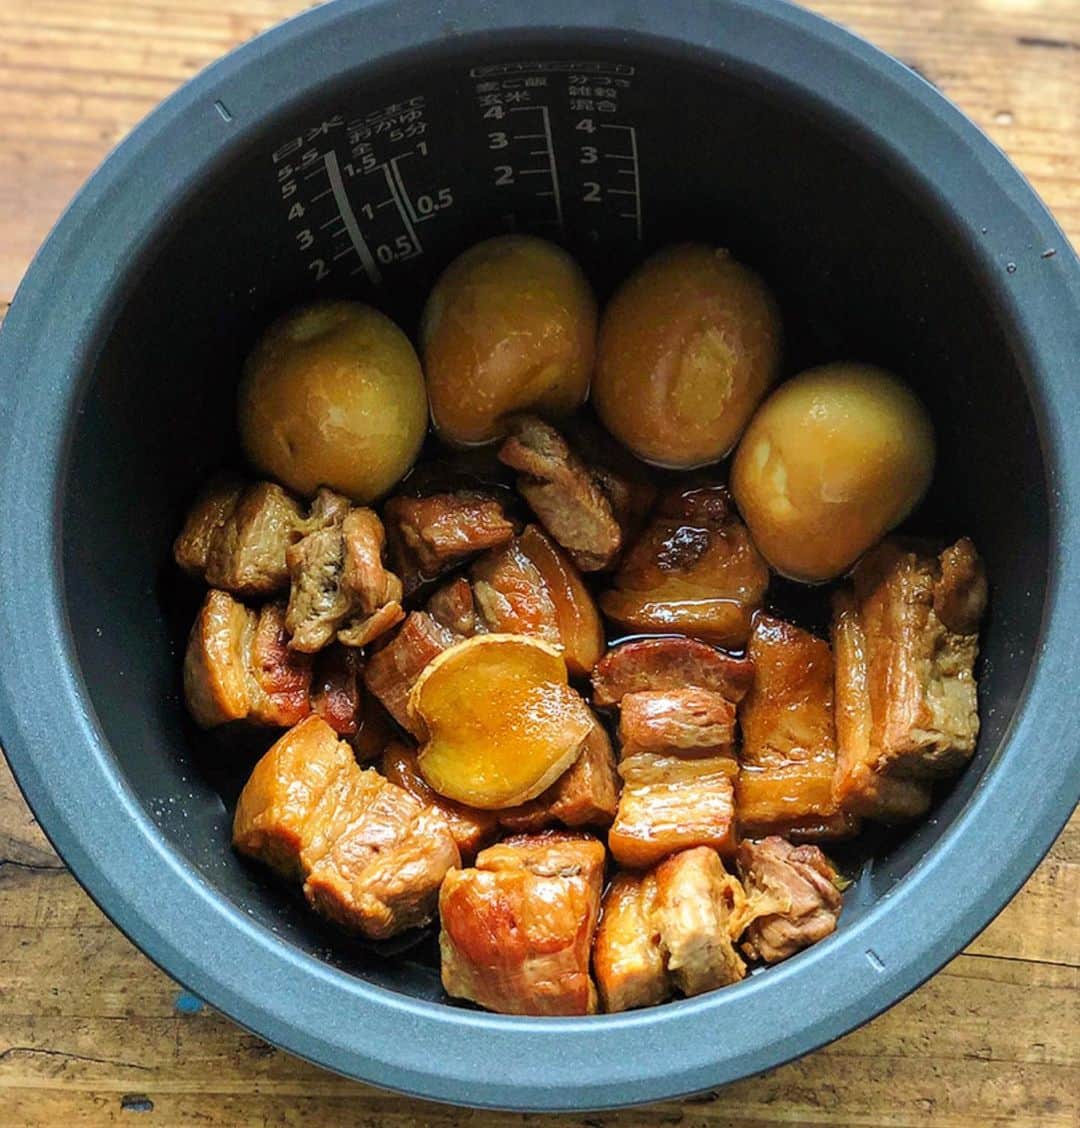 Mizuki【料理ブロガー・簡単レシピ】さんのインスタグラム写真 - (Mizuki【料理ブロガー・簡単レシピ】Instagram)「・﻿ 【レシピ】ーーーーー﻿ 超簡単おすすめ！﻿ ♡炊飯器de豚の角煮♡﻿ ーーーーーーーーーー﻿ ﻿ おはようございます(*^^*)﻿ 今日は炊飯器で作る﻿ 豚の角煮をご紹介させて頂きます♩﻿ これ、超簡単でおすすめ(*´艸`)﻿ 長時間煮込まなくても﻿ しっかり味が染みますよ〜！﻿ ﻿ このレシピはほぼ炊飯器任せですが﻿ 豚肉の下処理だけはするのがポイント♩﻿ さっと焼いて湯通しするだけで﻿ 余分な脂が抜けて﻿ 何倍も美味しく仕上がります(*´艸`)﻿ ﻿ ﻿ ーーーーーーーーーーーーーーーーーーー﻿ 【作りやすい量】﻿ 豚バラ塊肉...400〜500g﻿ ゆで卵...4個﻿ 生姜(スライス)...1かけ﻿ ●水・酒...各100ml﻿ ●醤油...50ml﻿ ●砂糖...大3﻿ (好みで)白髪ねぎ・辛子...各適量﻿ ﻿ 1.豚肉を4cm大に切り、油なしのフライパンで全体をこんがり焼く。(この時点でかなり余分な脂が落ちます☆)﻿ 2.豚肉から出た油を拭き取り、豚肉が半分浸かる程度の水(分量外)を入れ、沸騰したら5分程茹でて取り出す。(ここでも更に余分な脂が落ちます。)﻿ 3.炊飯器に●、生姜、豚肉、ゆで卵を入れて普通に炊飯する。(この後時間に余裕があれば保温状態で置いておくとより柔らかくなります♩)﻿ 4.器に盛り、白髪ねぎと辛子を添える。﻿ ーーーーーーーーーーーーーーーーーーー﻿ ﻿ ﻿ 《ポイント》﻿ ♦︎5合炊きの炊飯器を使用しています☆﻿ ♦︎茹でるのはたった5分！豚肉についた脂も落ちるのでこの一手間が重要です♩﻿ ♦︎炊飯が終わったらすぐに美味しく食べられますが、保温しておくとより柔らかくなります♩﻿ ♦︎炊飯器によってはお米以外の調理がダメなものもあるので確認して下さい！﻿ ﻿ ﻿ ﻿ ＿＿＿＿＿＿＿＿＿＿＿＿＿＿＿＿＿﻿ ＿＿＿＿＿＿＿＿＿＿＿＿＿＿＿＿＿﻿ 【お知らせ】﻿ 🎀新刊予約開始となりました🎀﻿ 『混ぜて焼くだけ。﻿ #ホットケーキミックスのお菓子 』﻿ 🔹ハイライトにリンクあります♩🔹﻿ ＿＿＿＿＿＿＿＿＿＿＿＿＿＿＿＿＿﻿ ＿＿＿＿＿＿＿＿＿＿＿＿＿＿＿＿＿﻿ ﻿ ﻿ ﻿ #ブログ更新しました﻿ ブログはホームのリンクよりご覧下さい↓﻿ @mizuki_31cafe﻿ 【Mizuki公式ラインブログ】﻿ https://lineblog.me/mizuki_official/﻿ ﻿ ﻿ 【お知らせ】﻿ ストーリーズでは一日数回﻿ 別レシピをご紹介しております(*^^*)﻿ ＊コメントは最新の投稿に下さいますよう﻿ お願い致しますm(_ _)m﻿ ﻿ ﻿ ﻿ #お正月#角煮#炊飯器#豚肉#おせち料理#ゆで卵#Mizuki#簡単レシピ#時短レシピ#節約レシピ#料理#レシピ#フーディーテーブル#おうちごはん#おうちカフェ#デリスタグラマー#料理好きな人と繋がりたい#料理ブロガー#おうちごはんlover#マカロニメイト﻿ #foodpic#follow#cooking#recipe#lin_stagrammer#炊飯器de豚の角煮m」12月28日 8時05分 - mizuki_31cafe